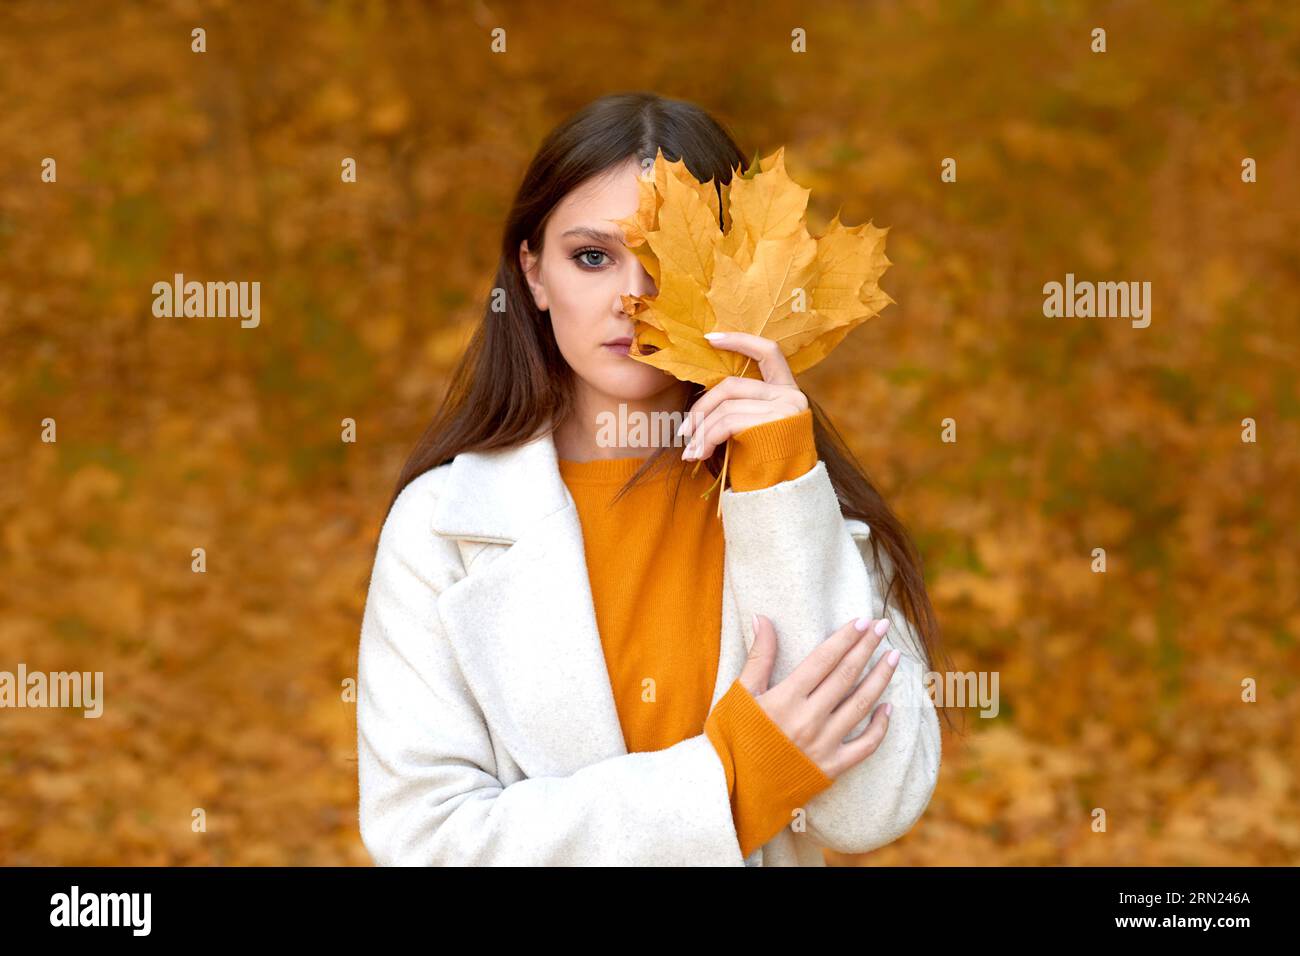 femme triste portant un manteau d'automne marchant au parc. fille offensée tenant des feuilles bouquet dans la nature d'automne Banque D'Images